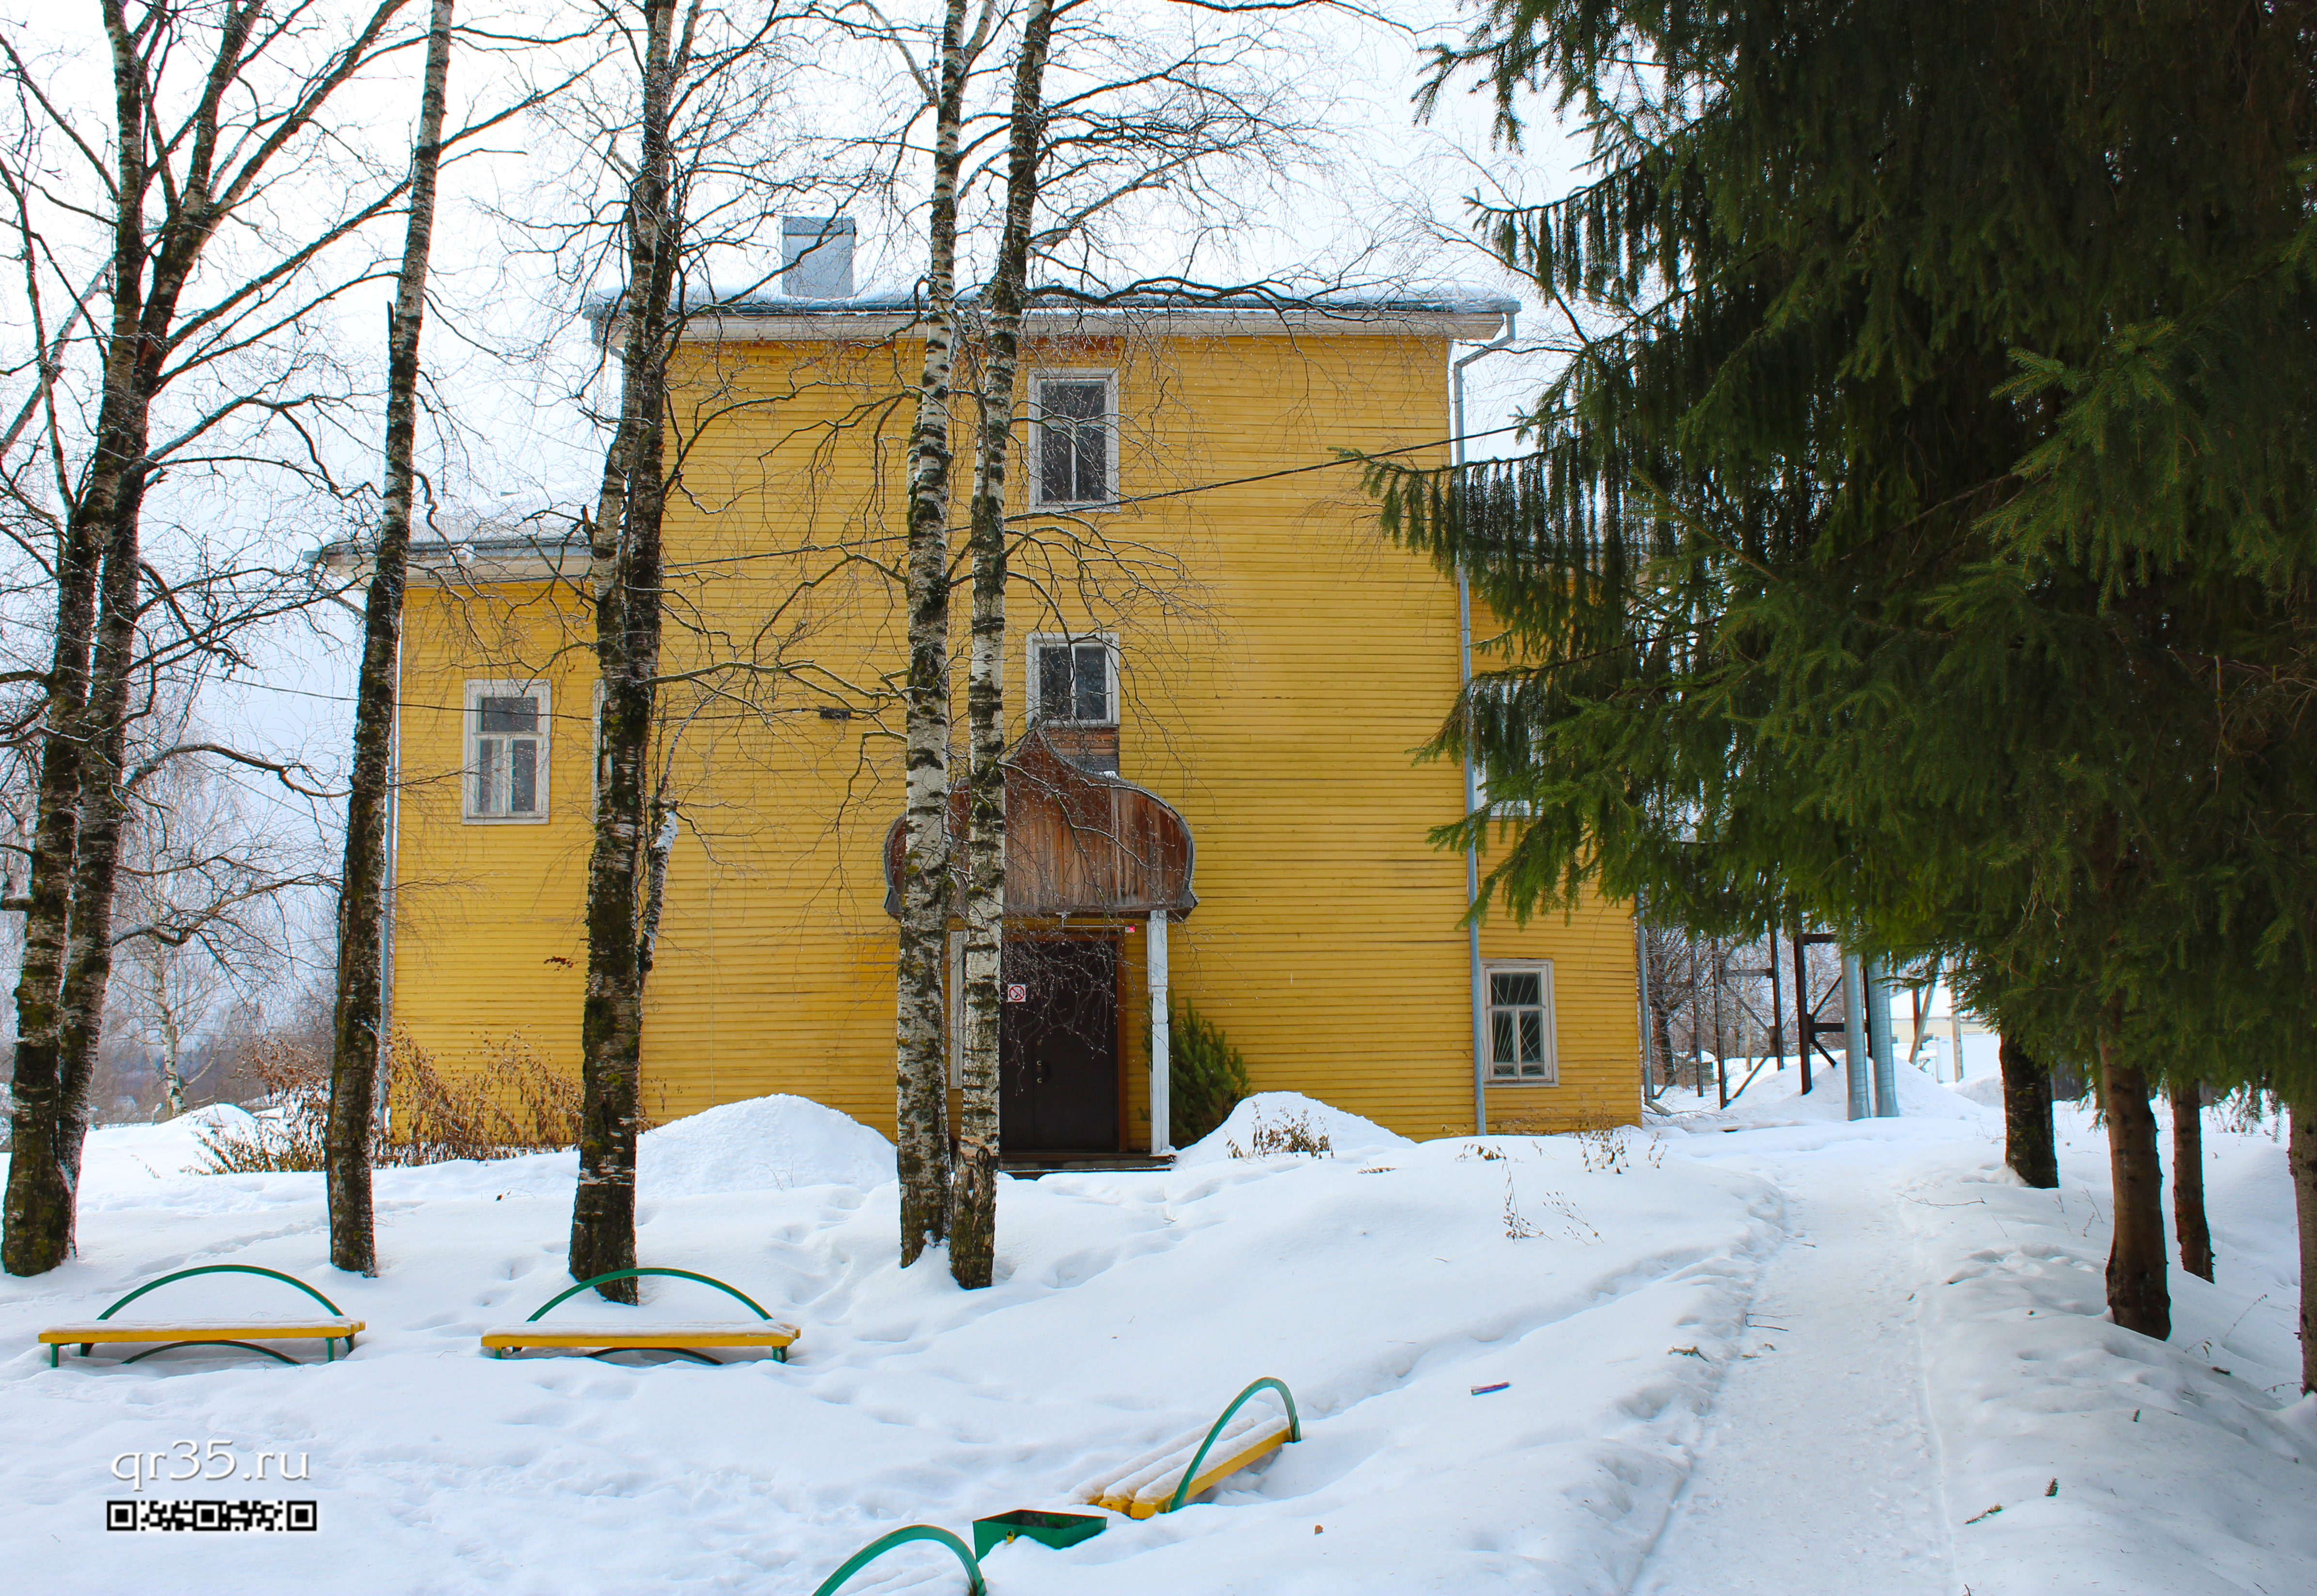  Дом купца Михаила Александровича Нератова 